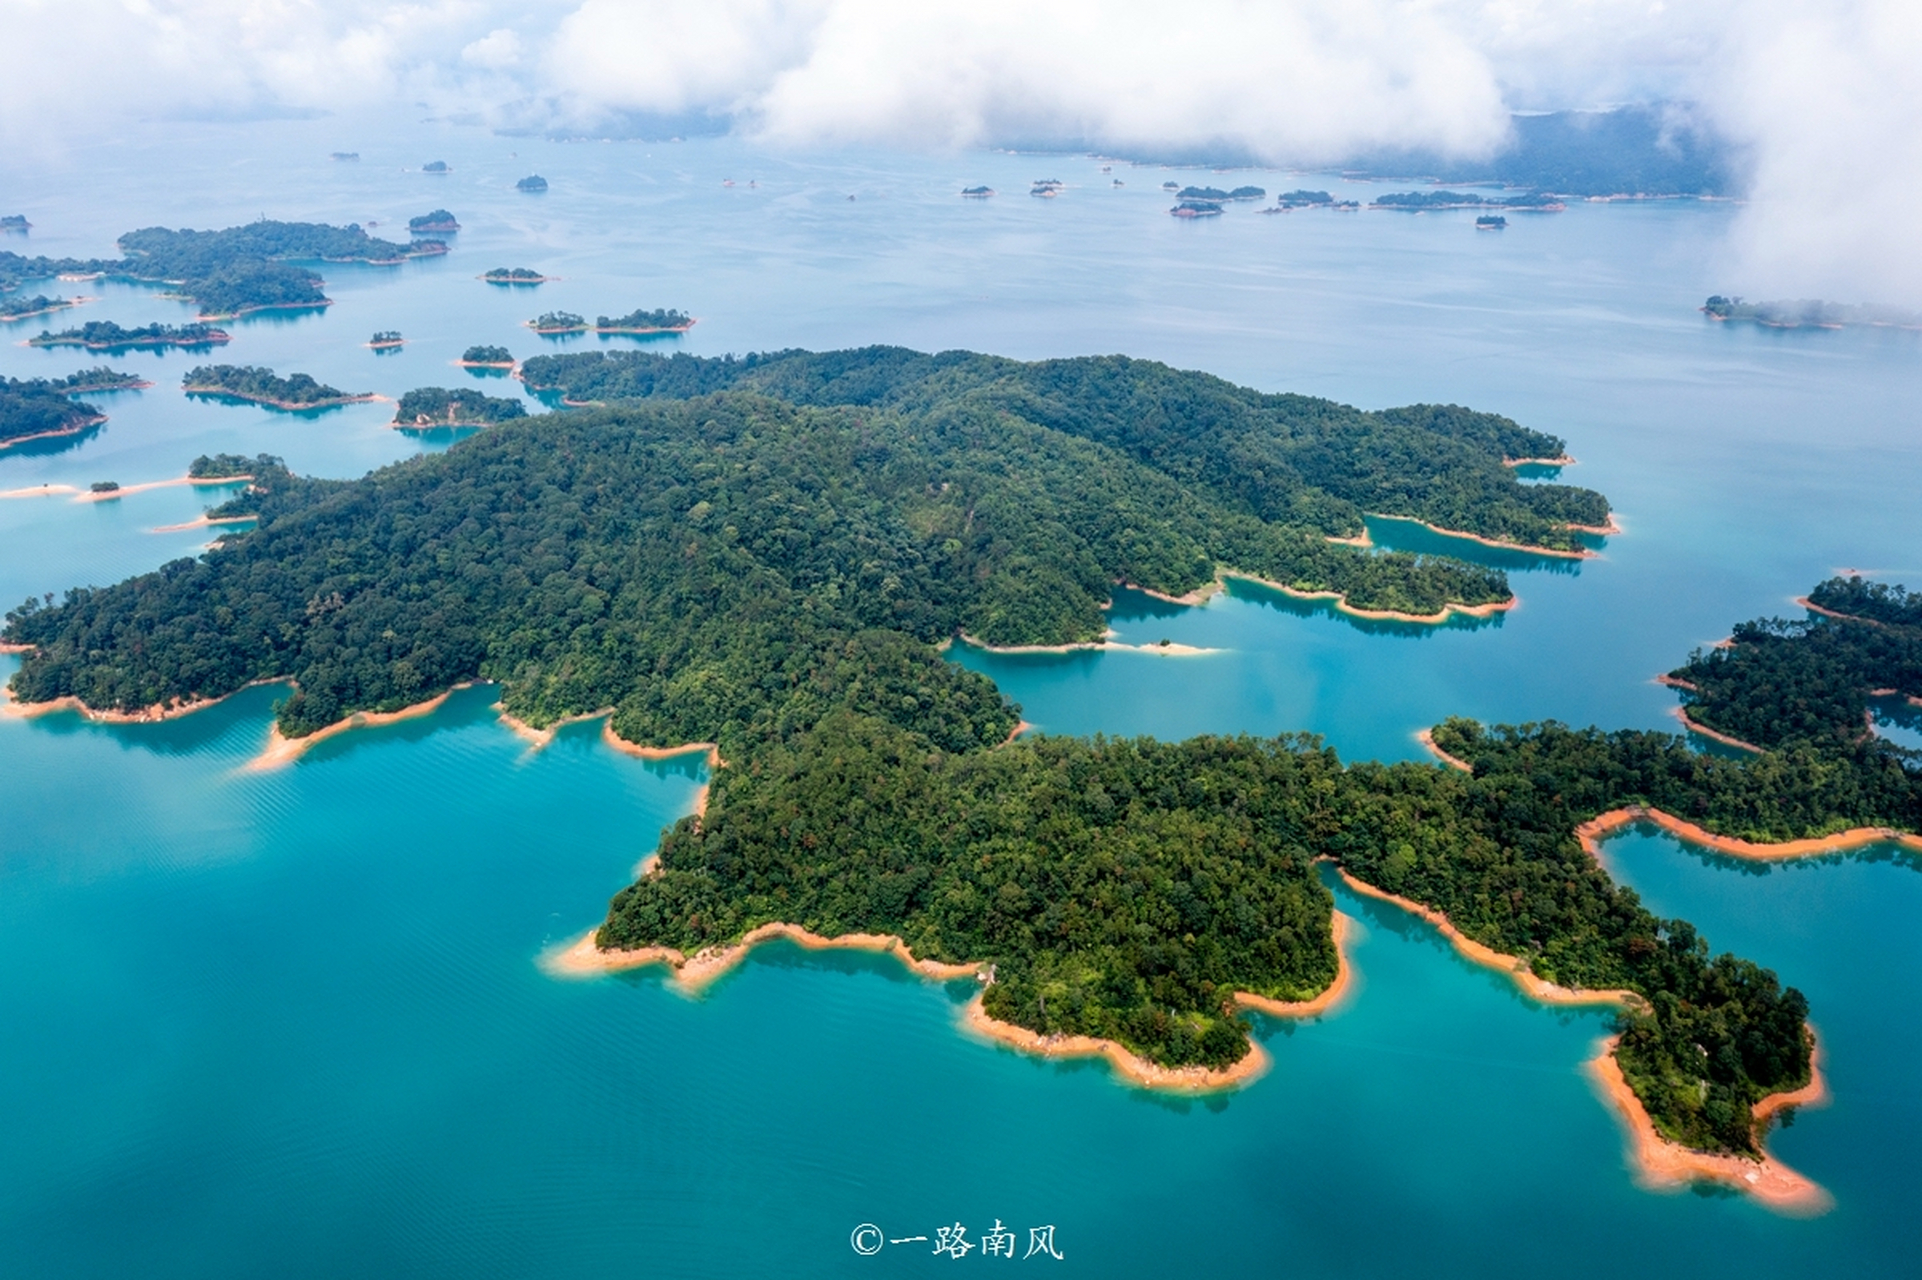 河源万绿湖,华南最大的人工湖,颜值不输杭州千岛湖,照片美到可以当